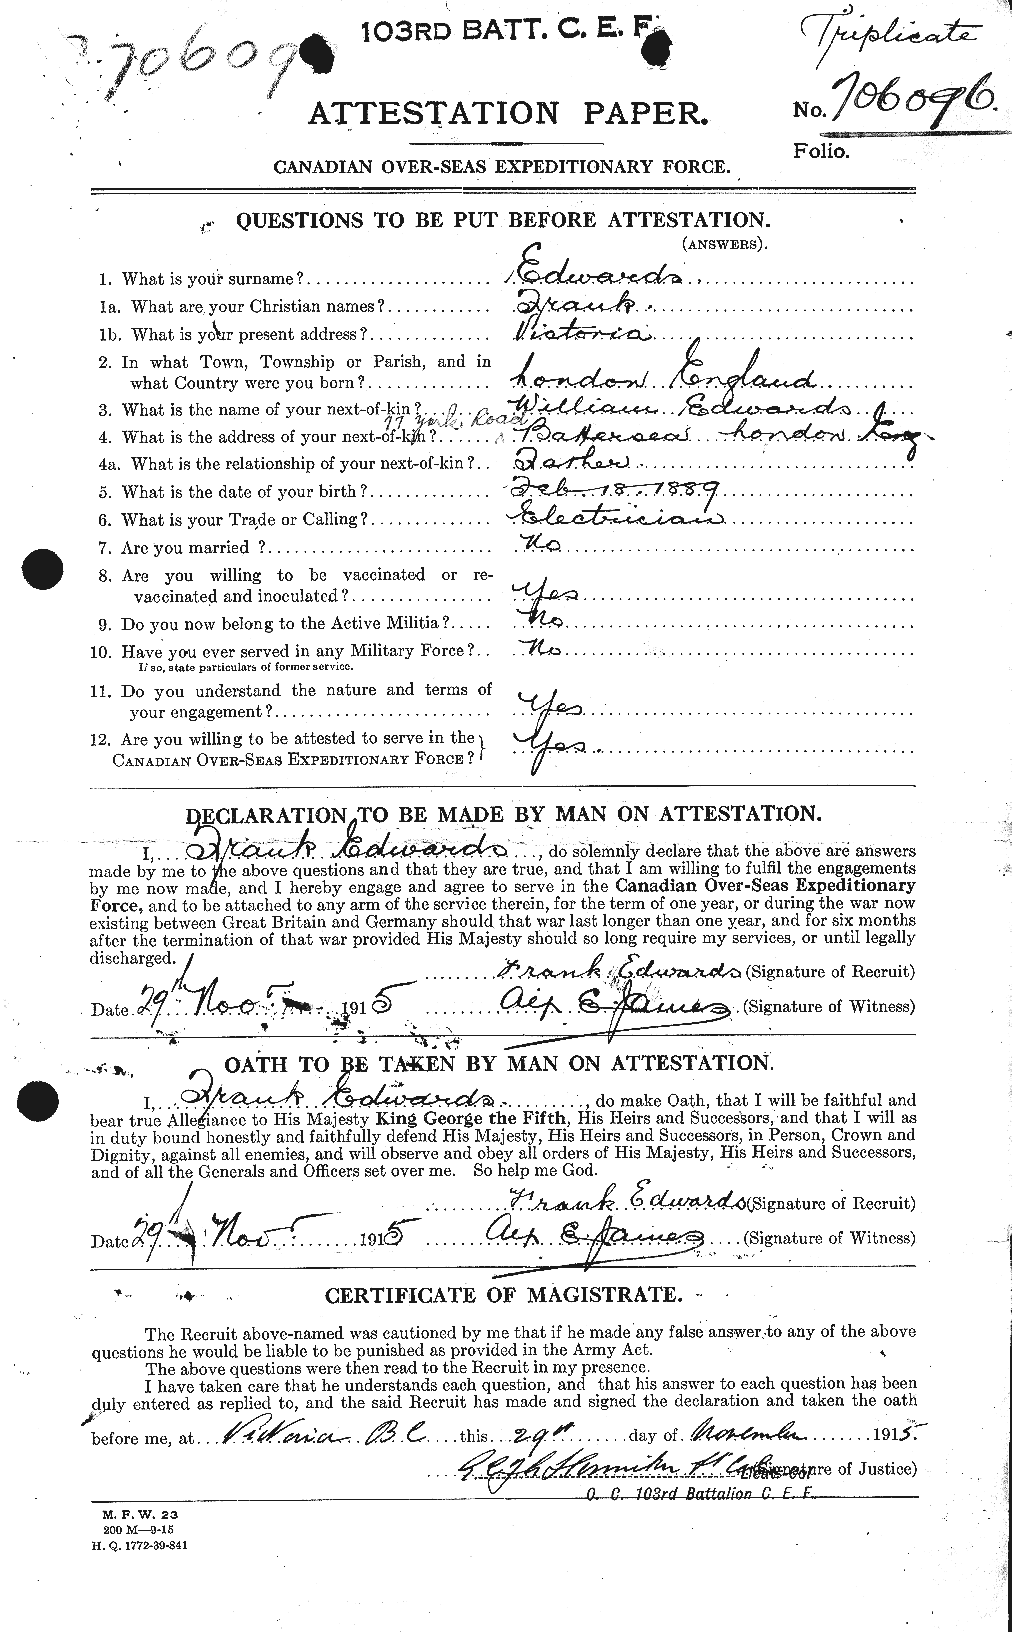 Dossiers du Personnel de la Première Guerre mondiale - CEC 309043a